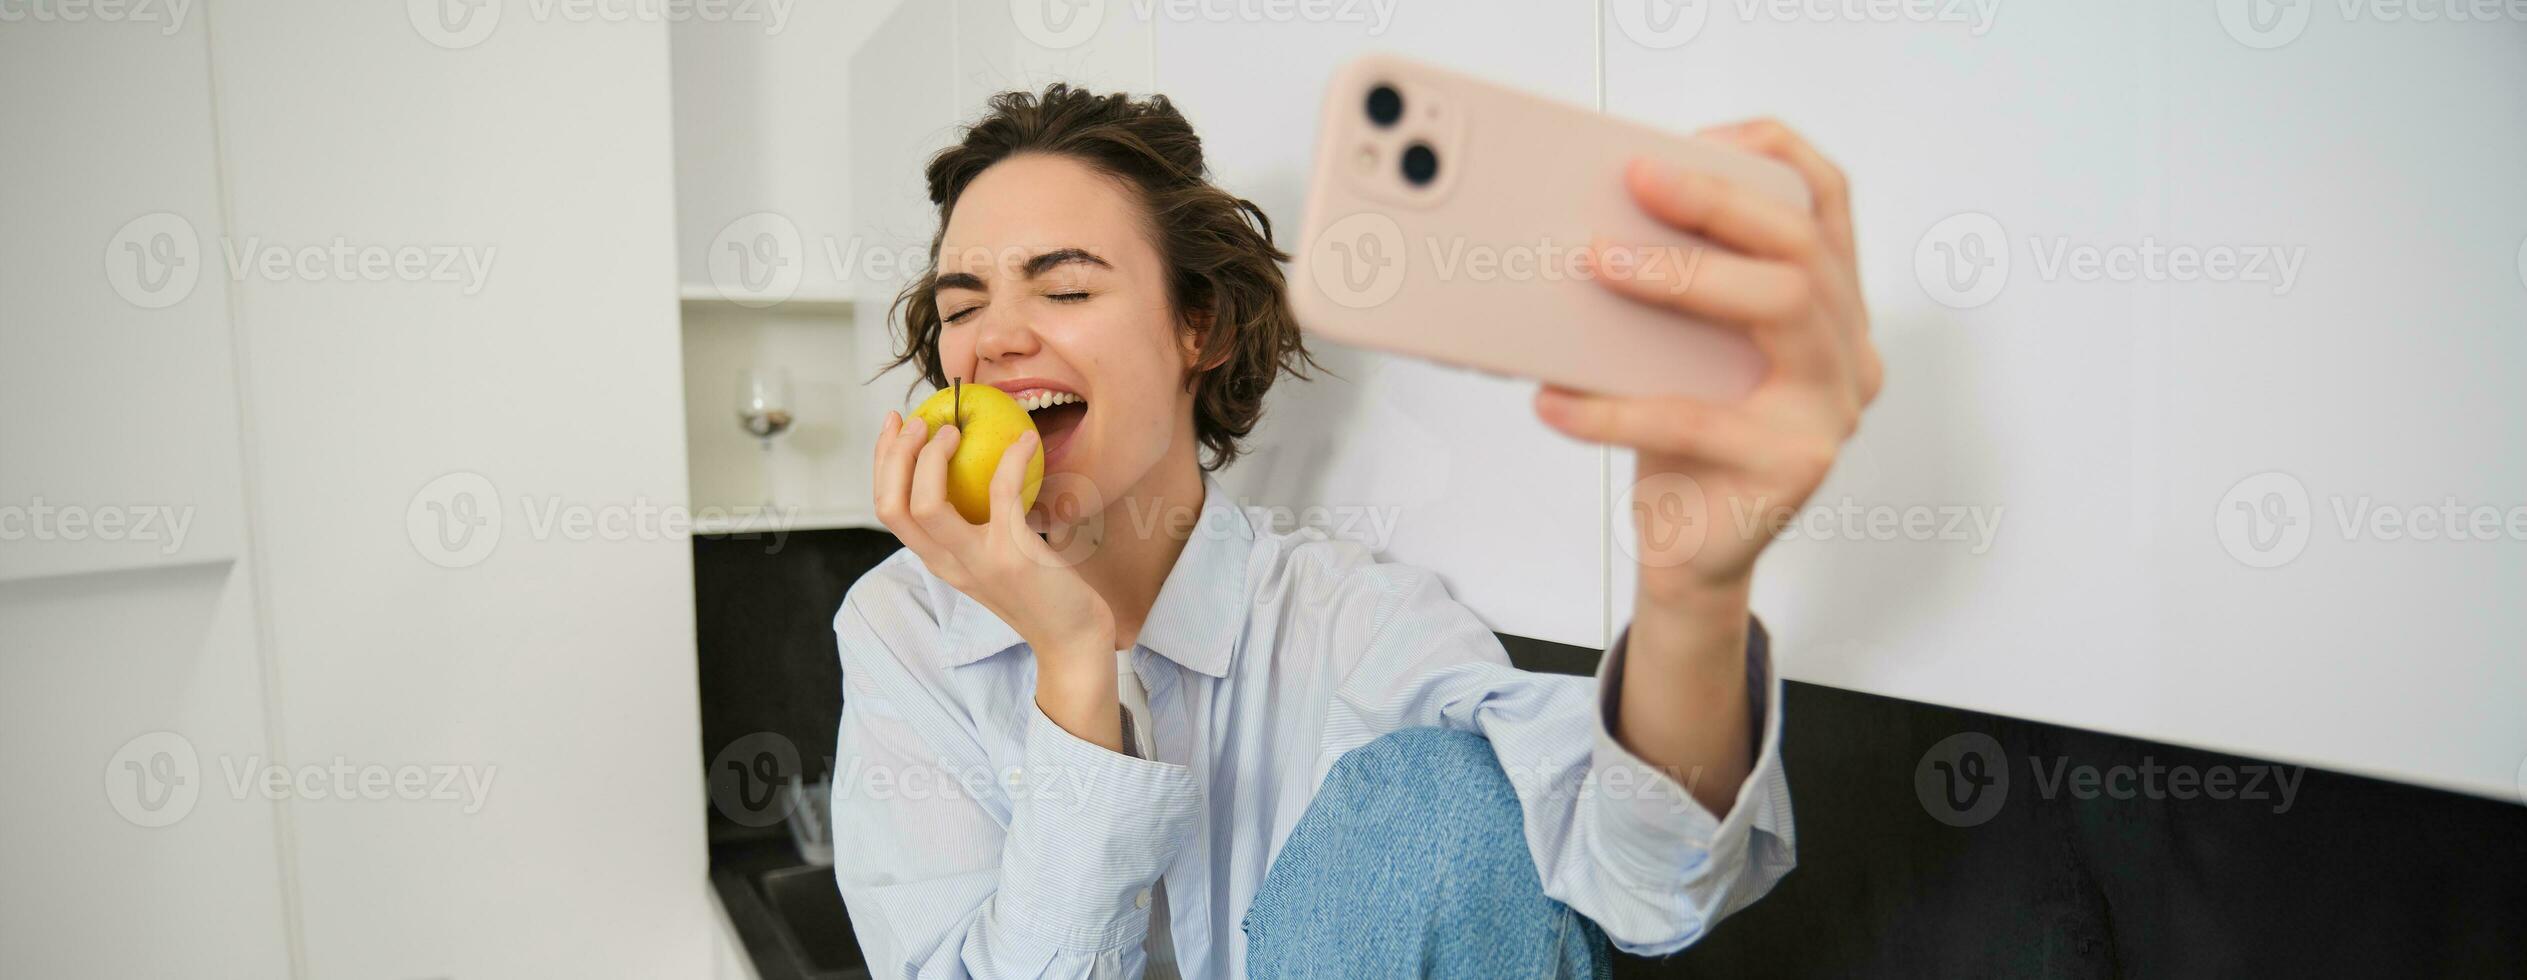 uppriktig, Lycklig ung kvinna bitande ett äpple för en selfie, tar Foto på smartphone medan äter frukt